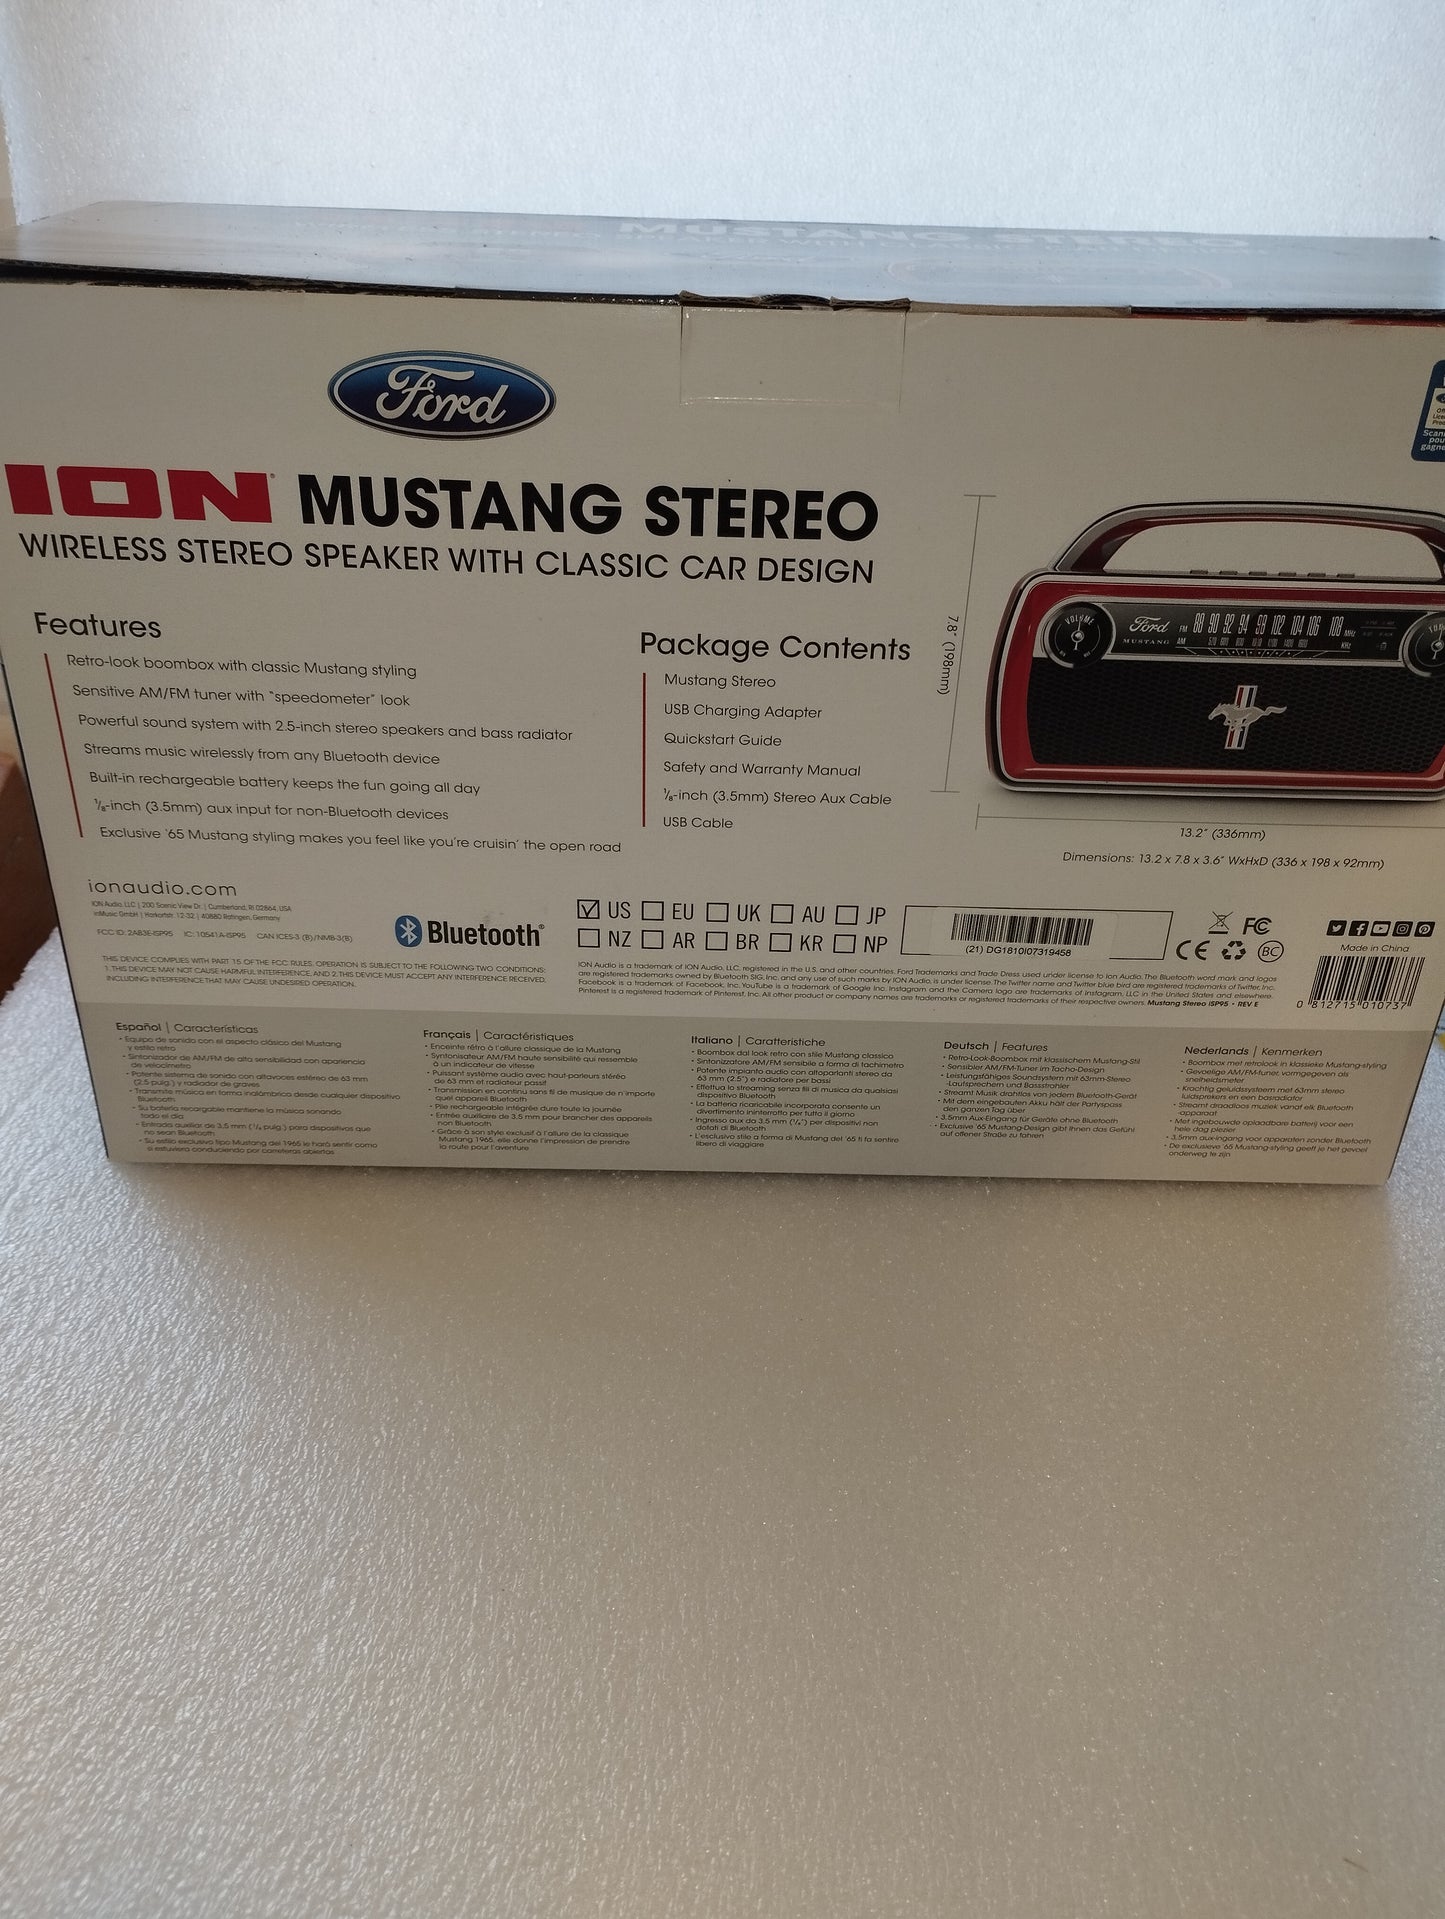 Boombox Mustang Stereo

Prodotto da ION
- AM/FM